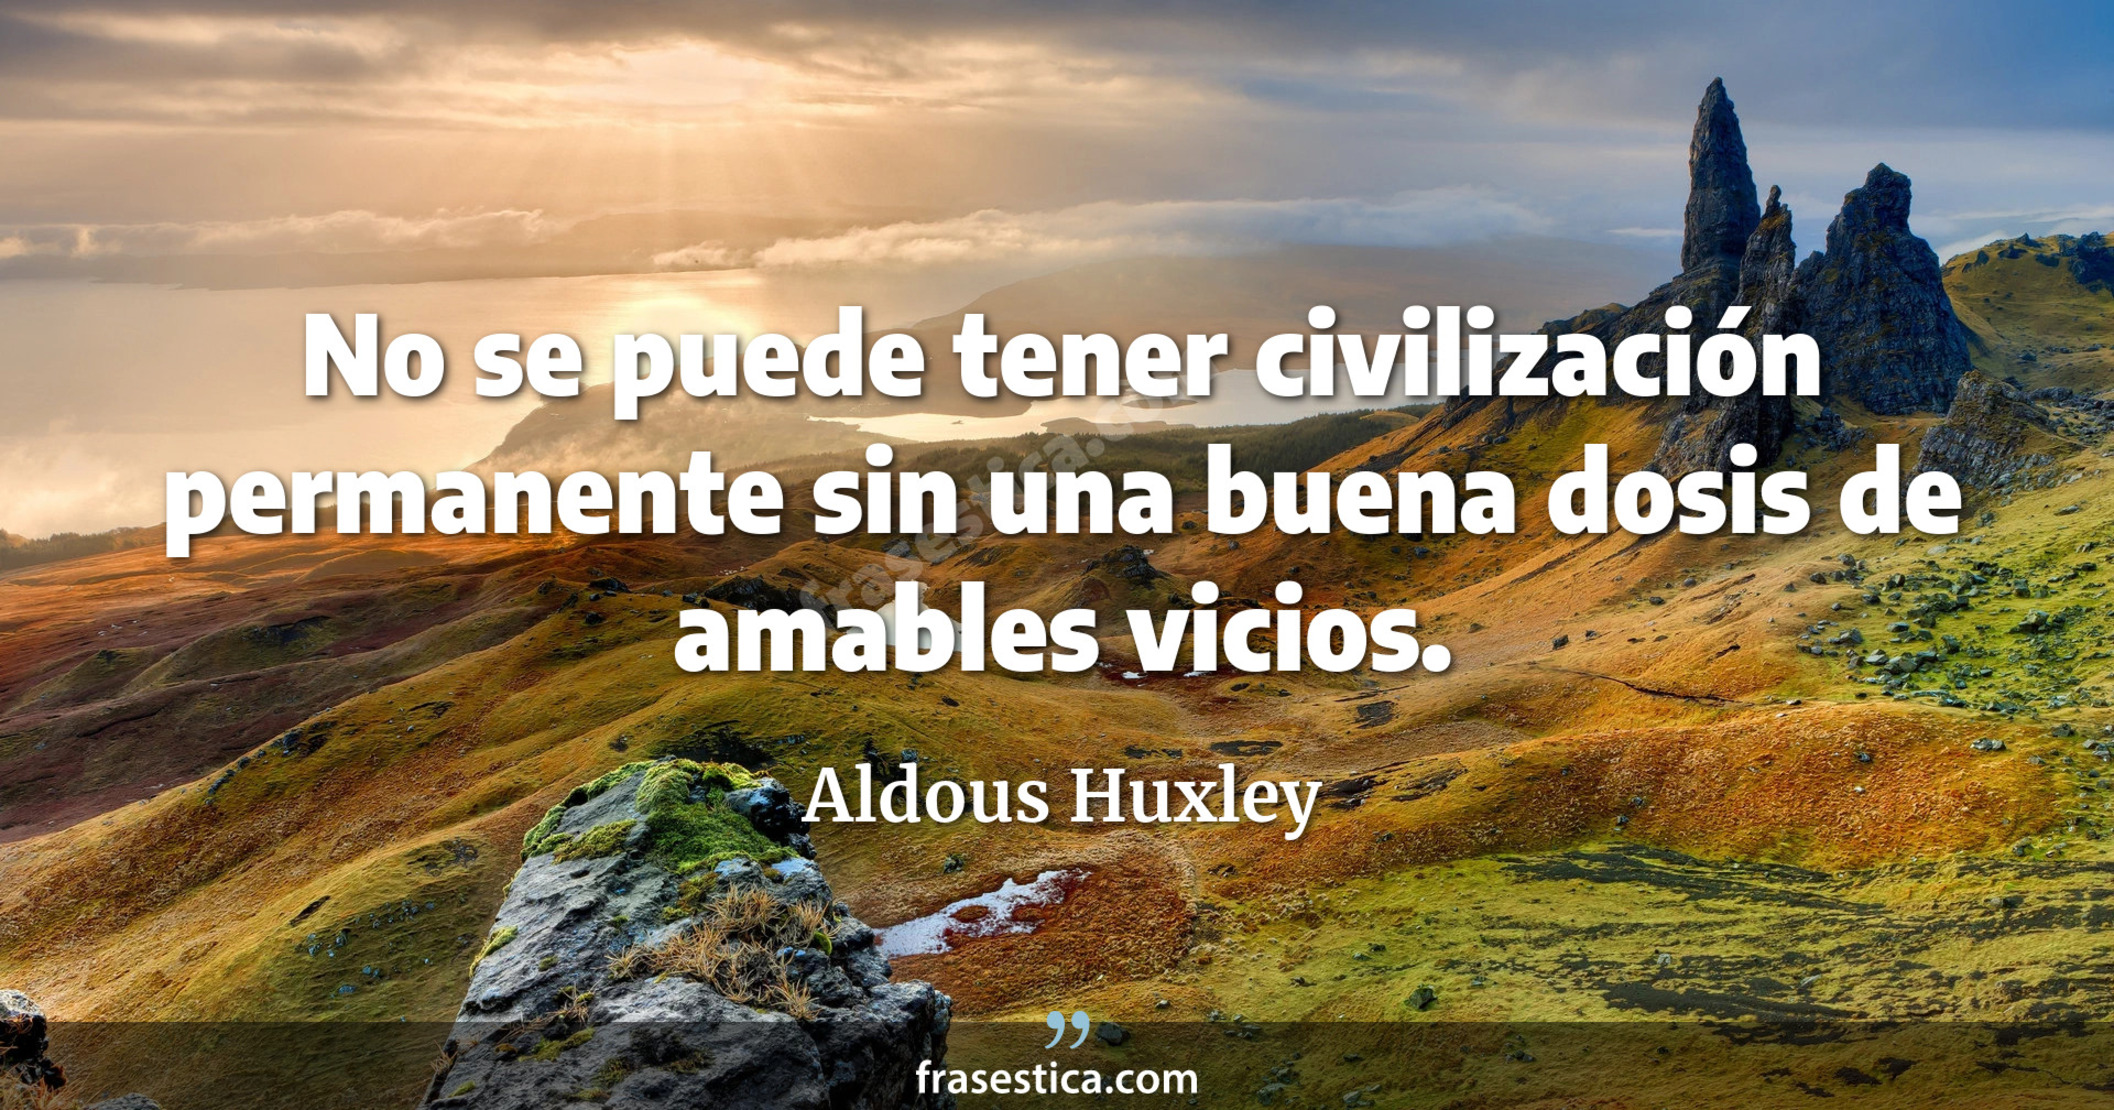 No se puede tener civilización permanente sin una buena dosis de amables vicios. - Aldous Huxley